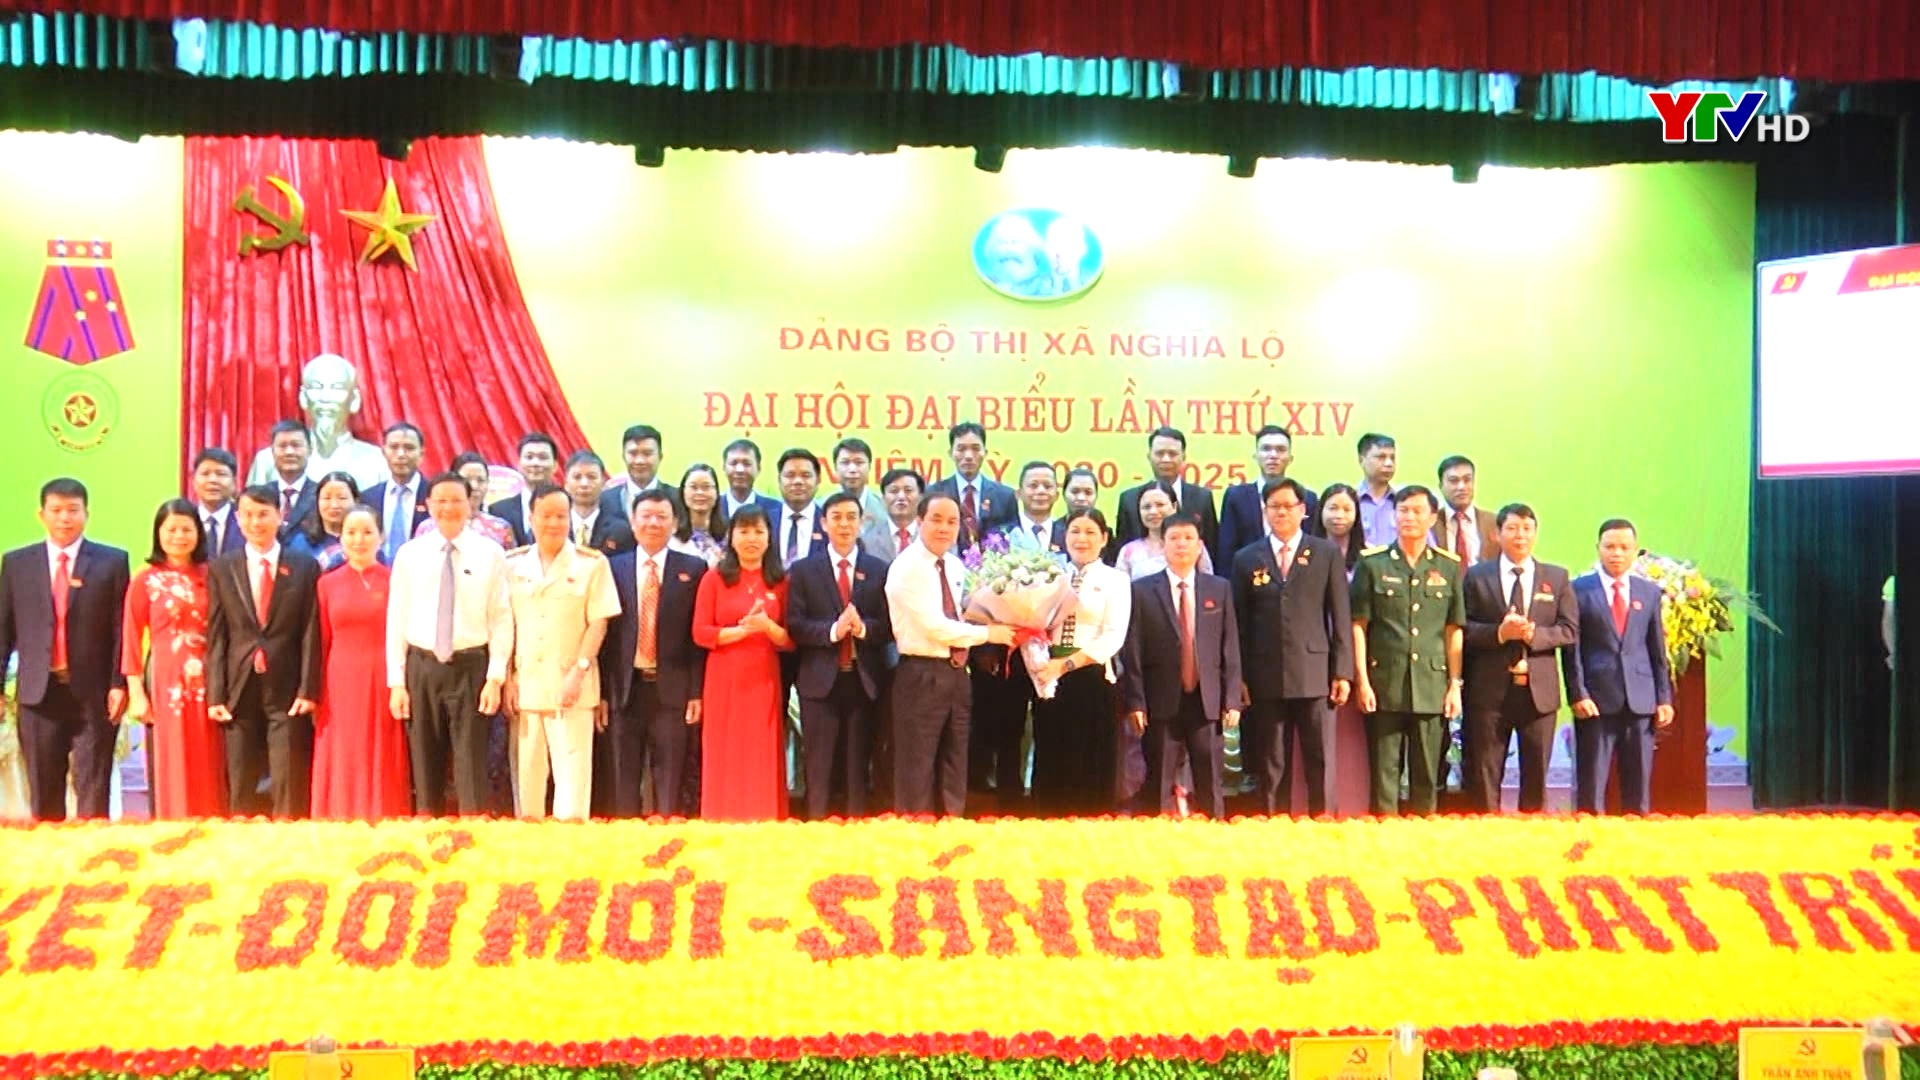 Đại hội đại biểu Đảng bộ thị xã Nghĩa Lộ lần thứ XIV, nhiệm kỳ 2020 - 2025 thành công tốt đẹp